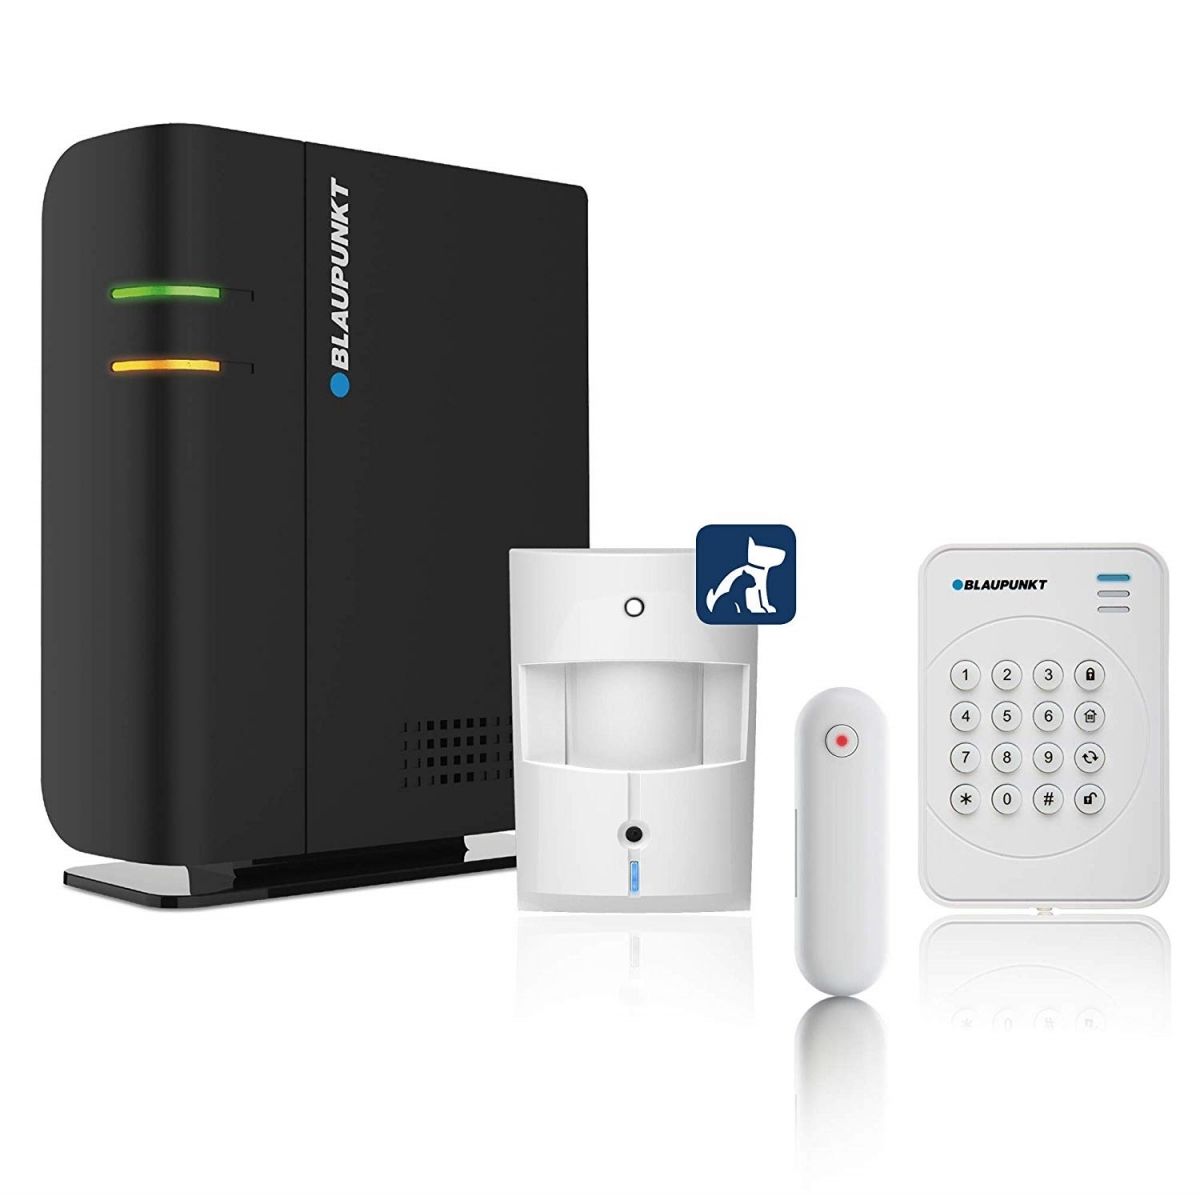 Q-Pro 6600 Smart Home Draadloos Alarmsysteem